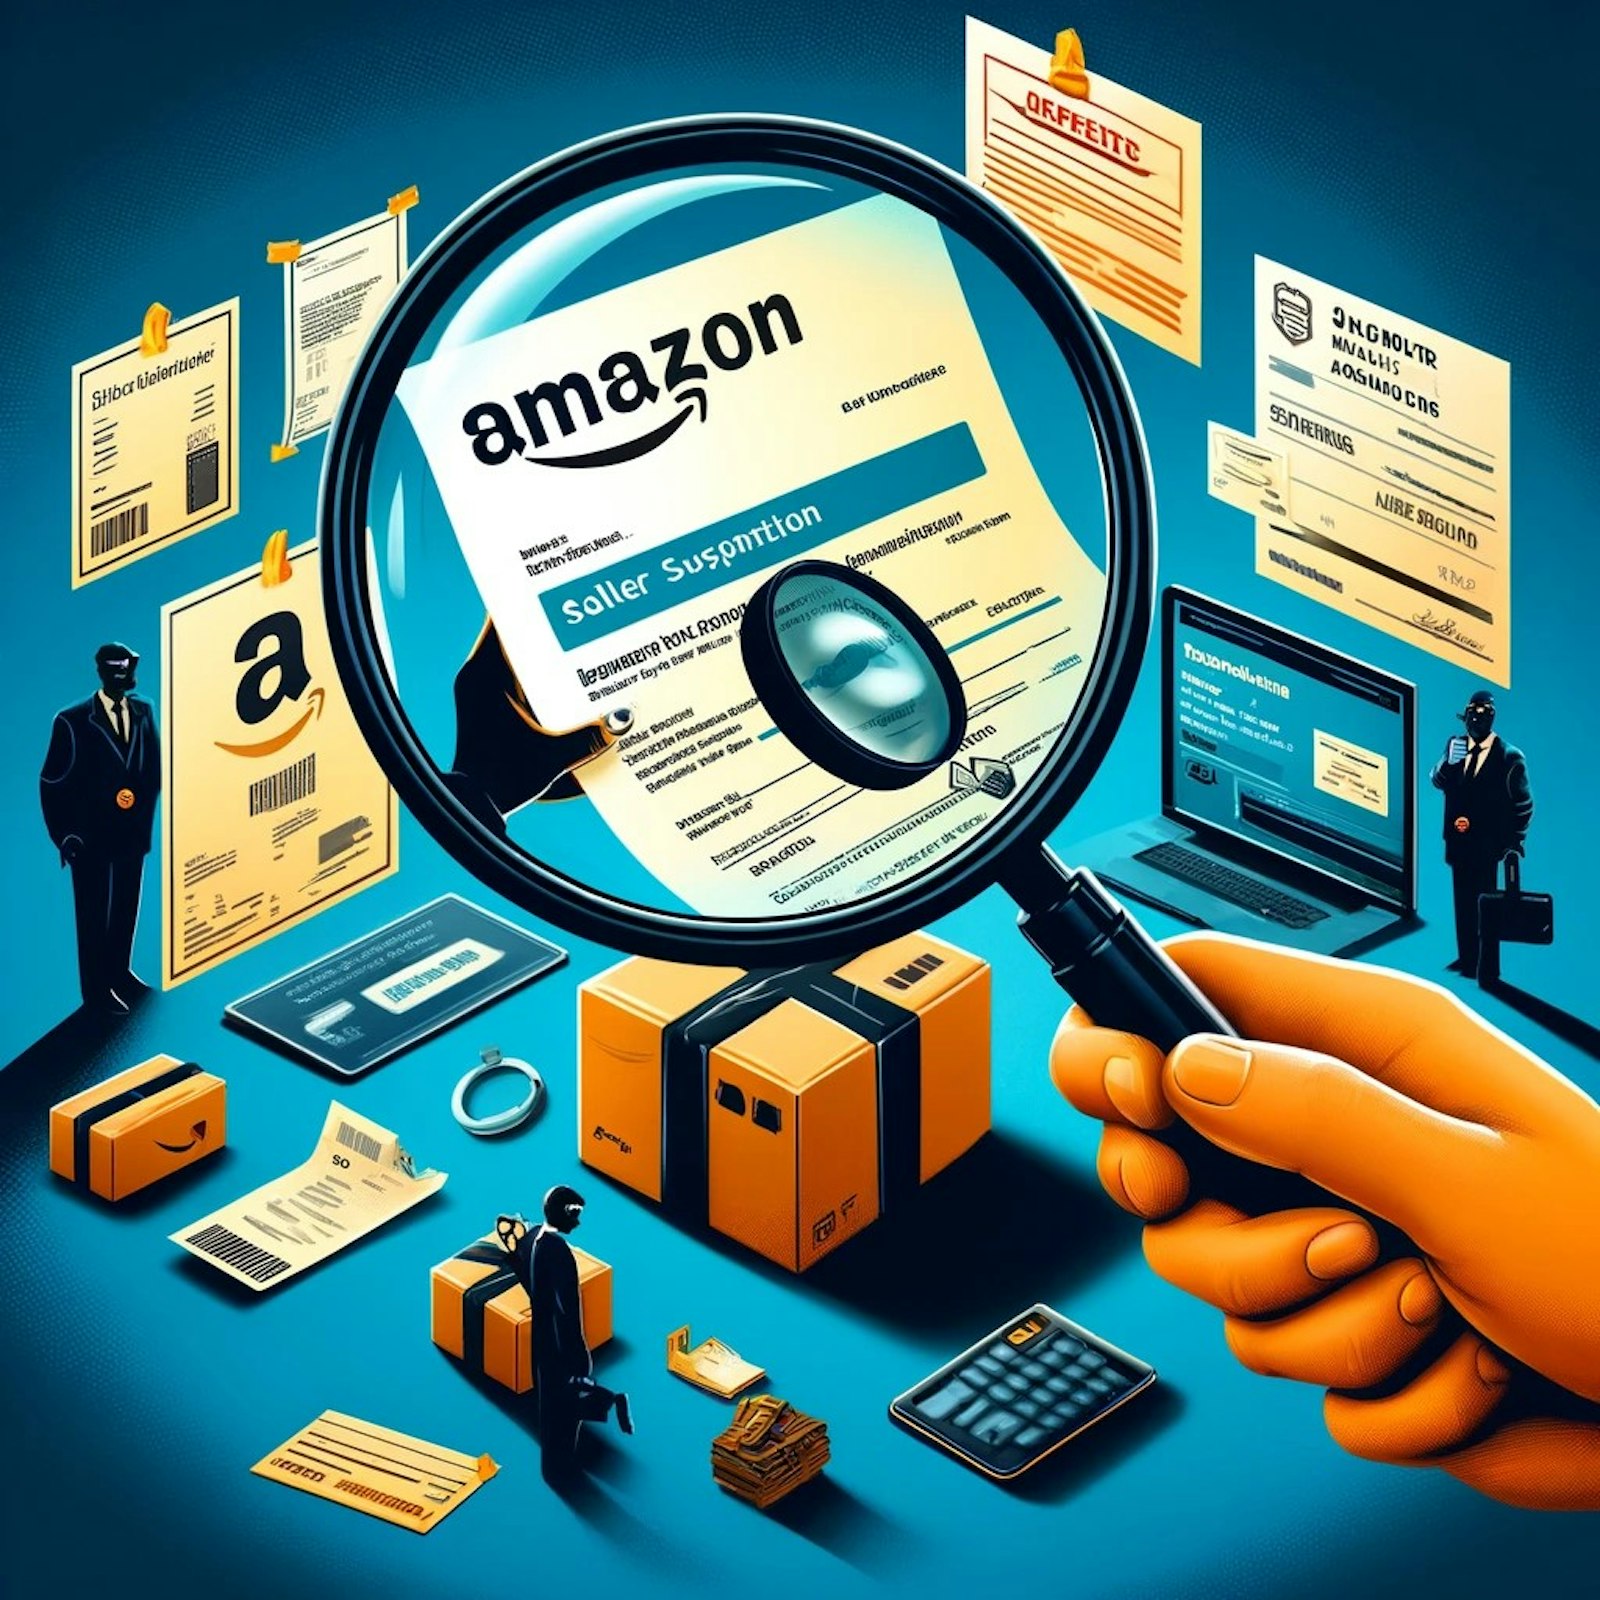 Illustration de conseils pour éviter la suspension du compte Amazon, incluant la sélection de fournisseurs fiables et la gestion des plaintes.